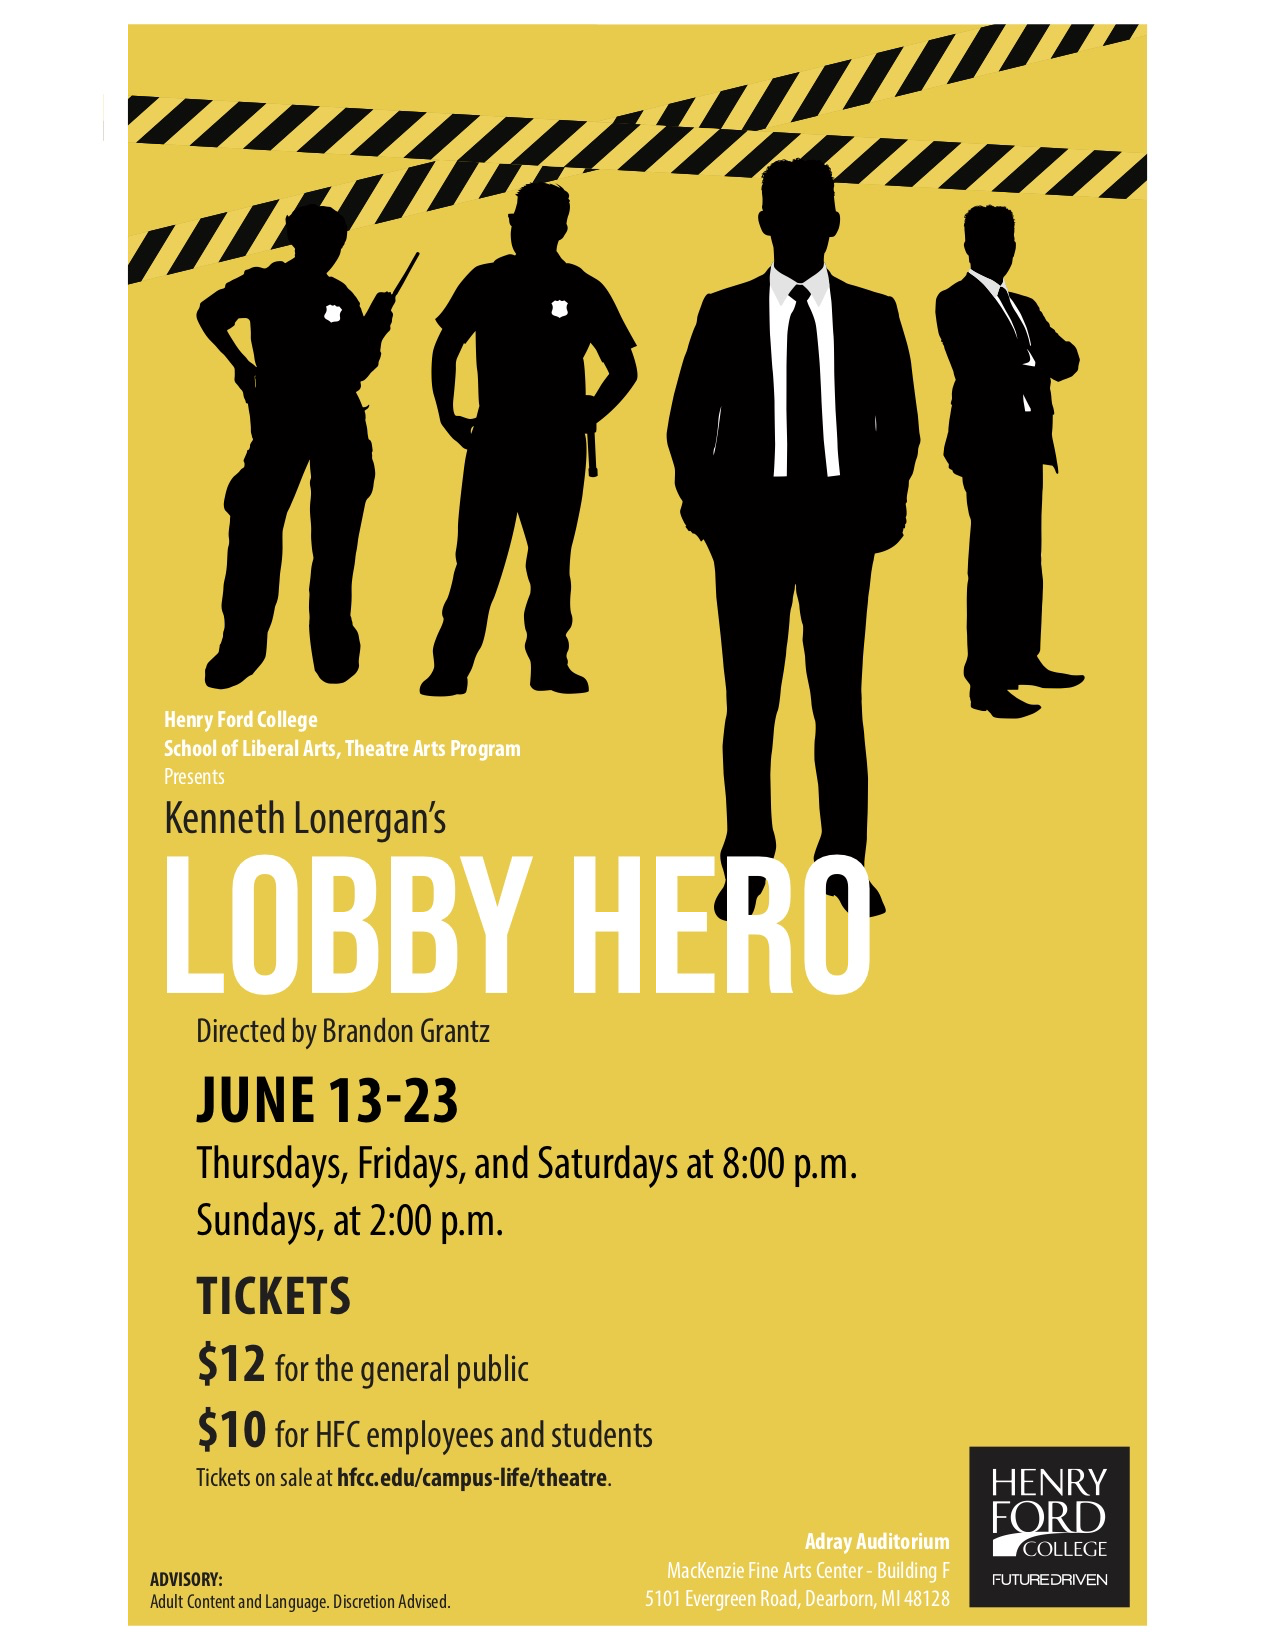 Poster for "Lobby Hero"